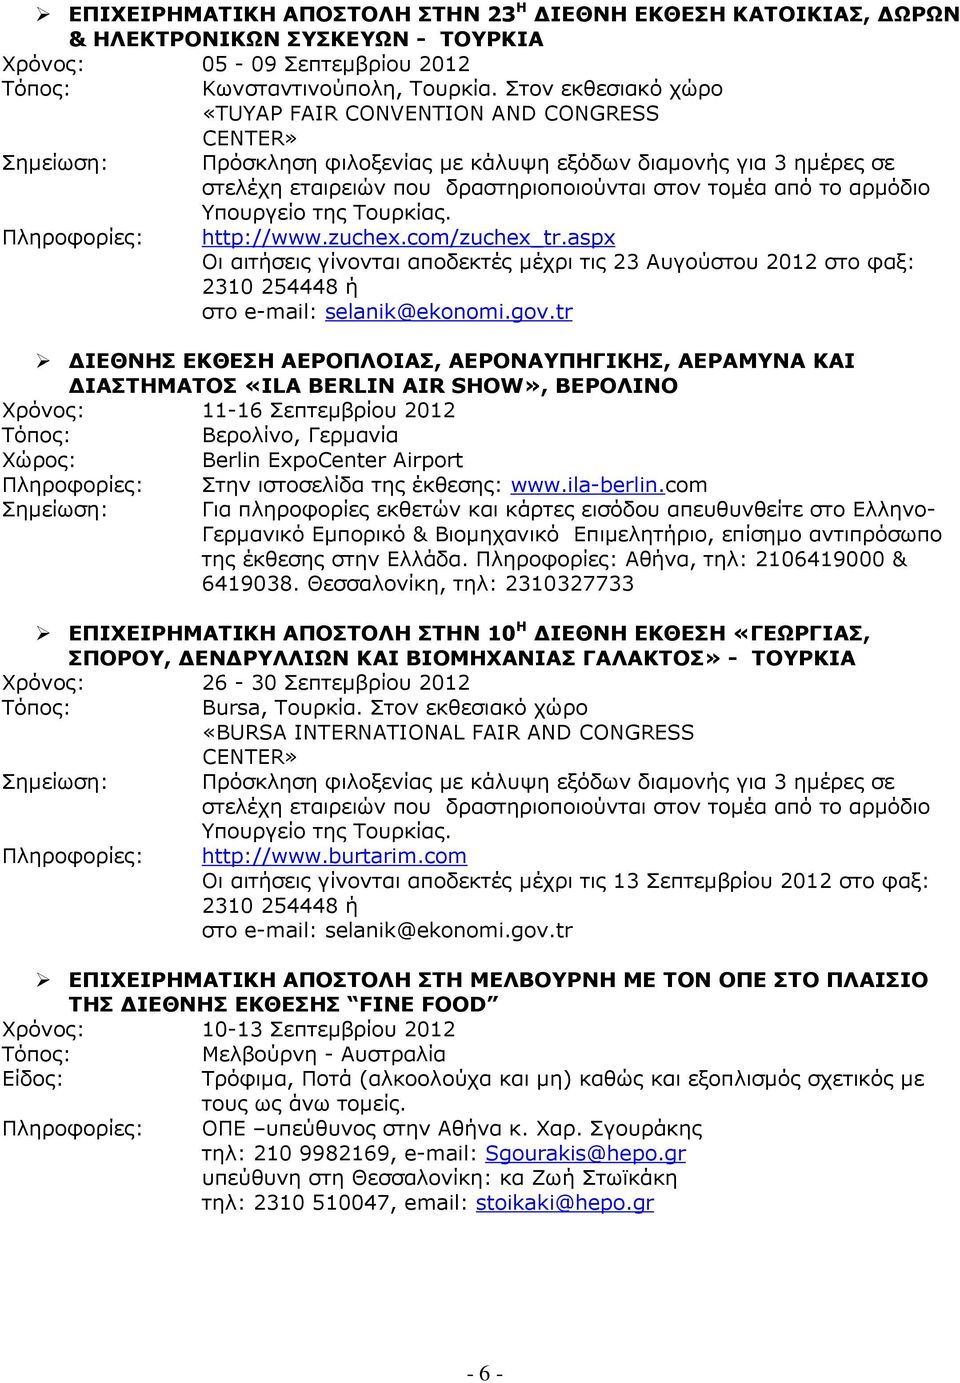 αρµόδιο Υπουργείο της Τουρκίας. http://www.zuchex.com/zuchex_tr.aspx Οι αιτήσεις γίνονται αποδεκτές µέχρι τις 23 Αυγούστου 2012 στο φαξ: 2310 254448 ή στο e-mail: selanik@ekonomi.gov.